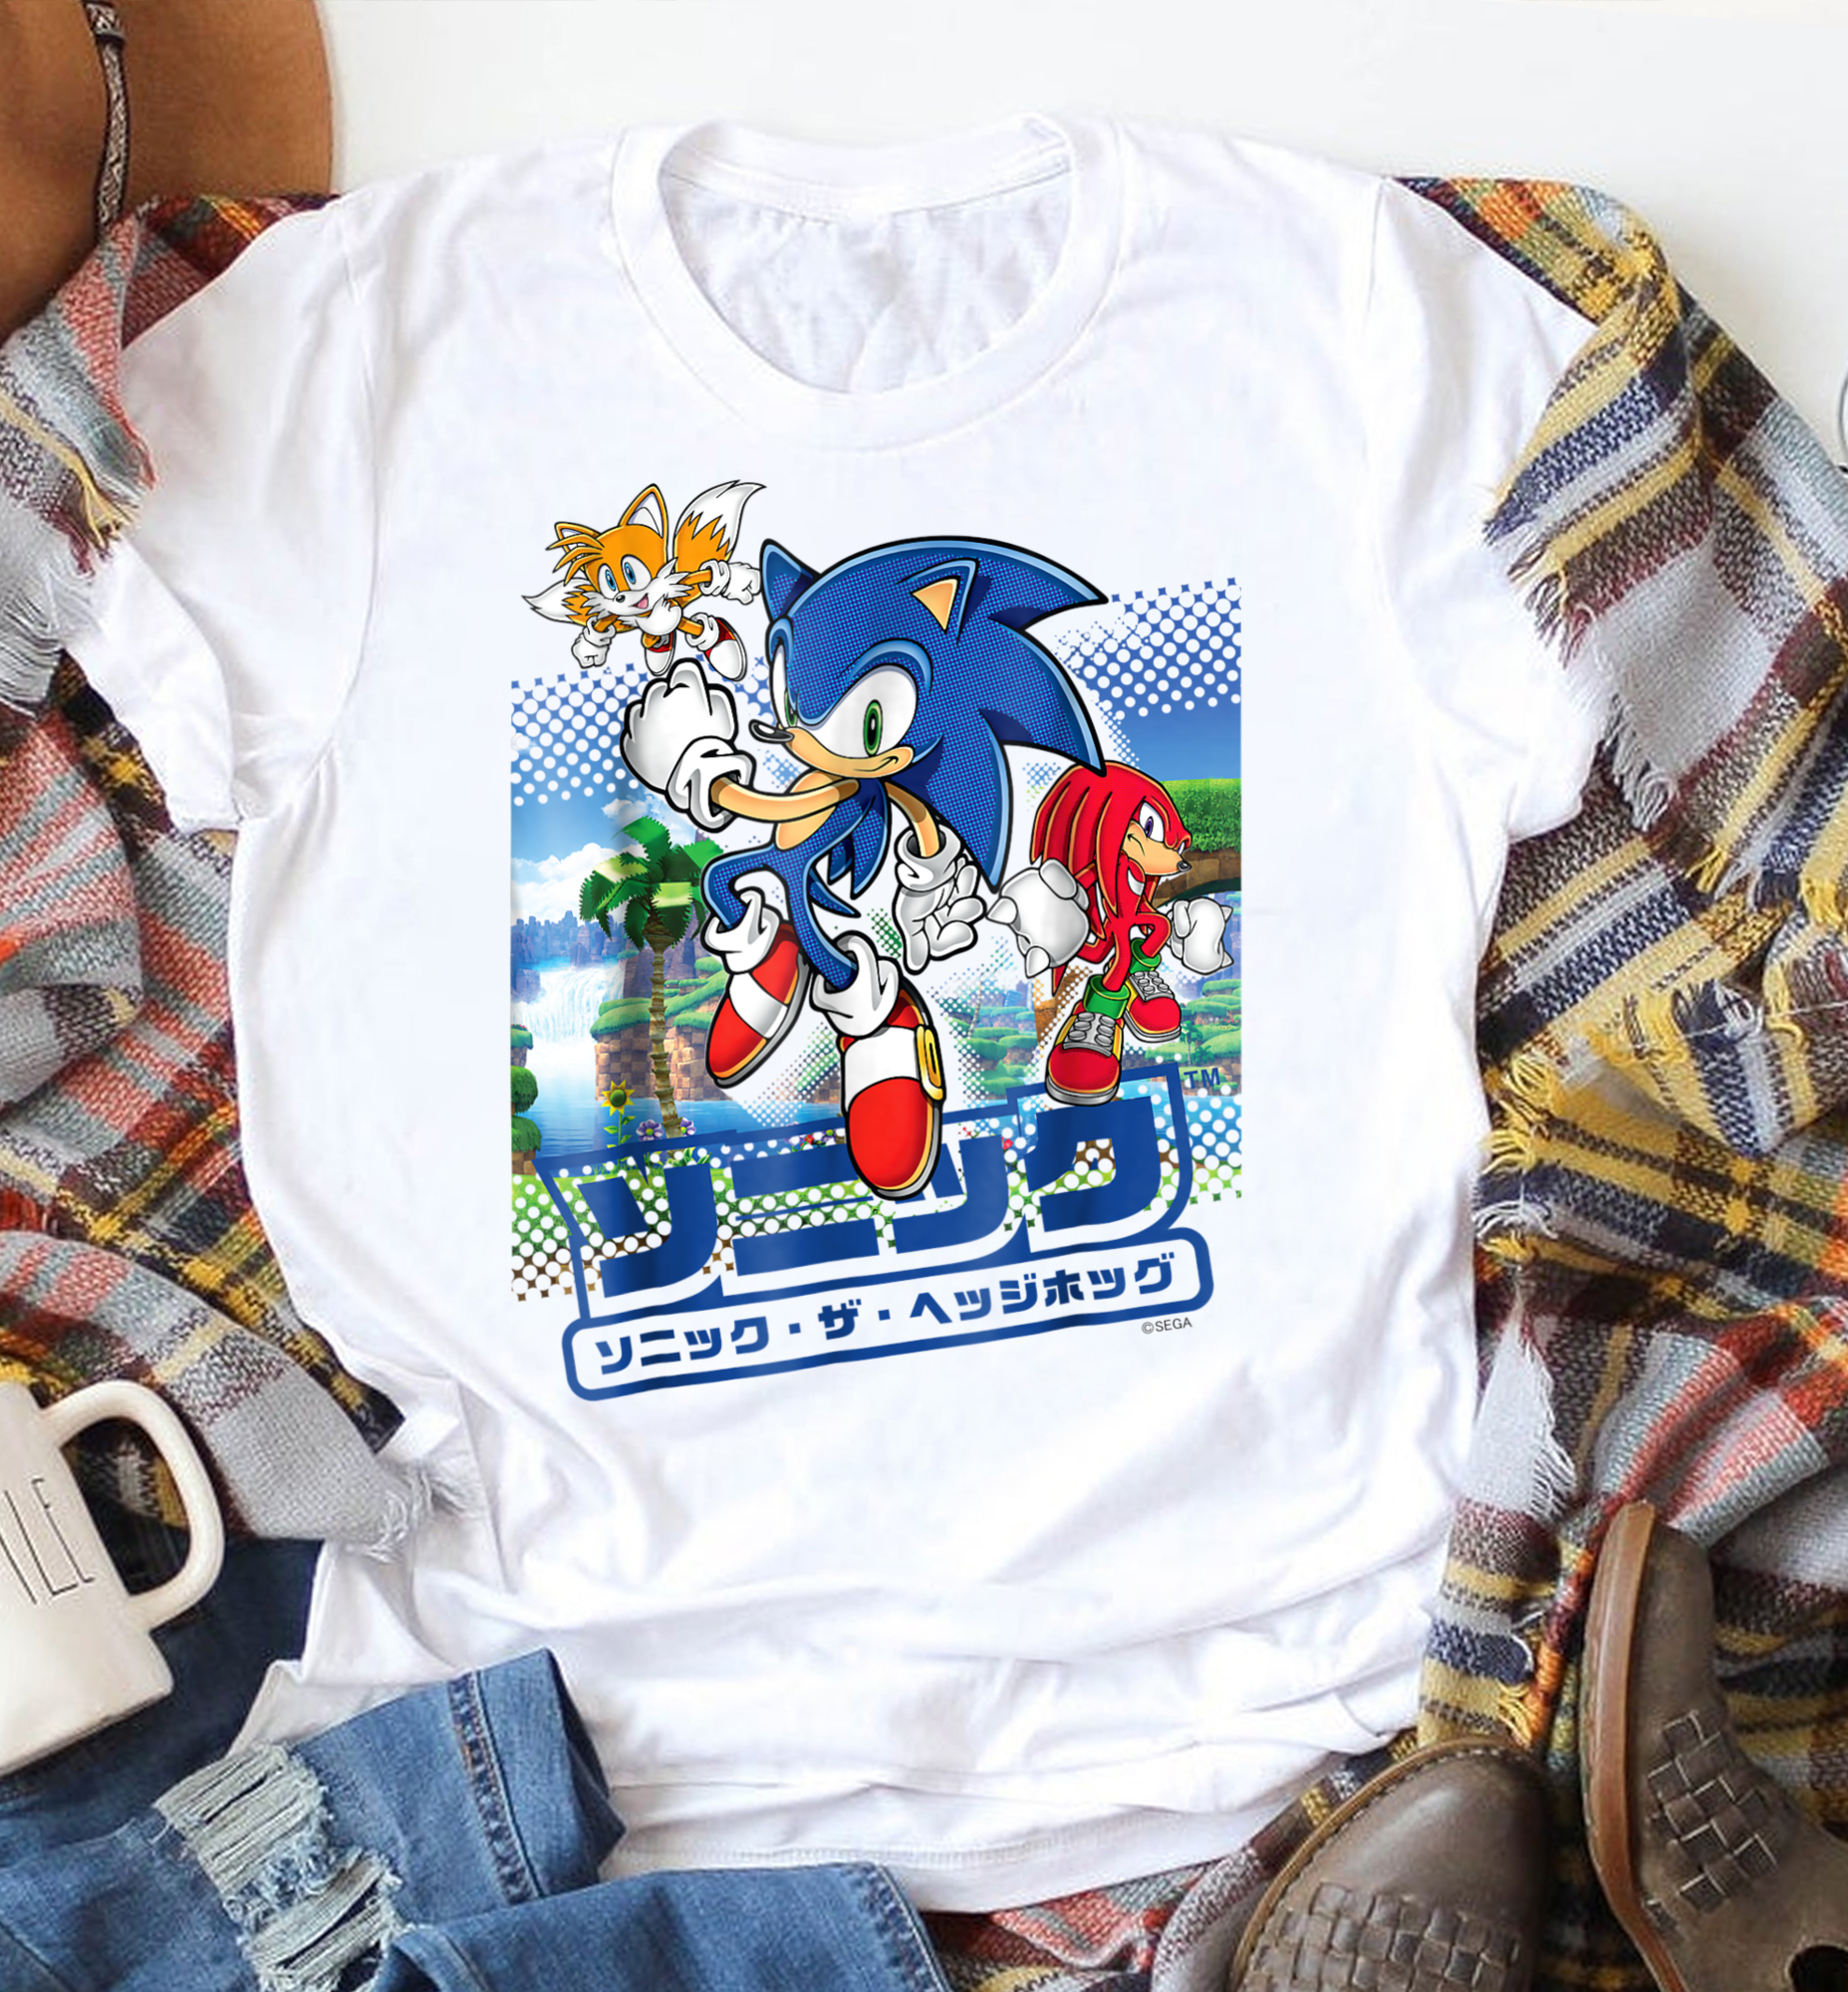 Sonic and Friends Shirt, Sonic vs Mario Birthday shirt